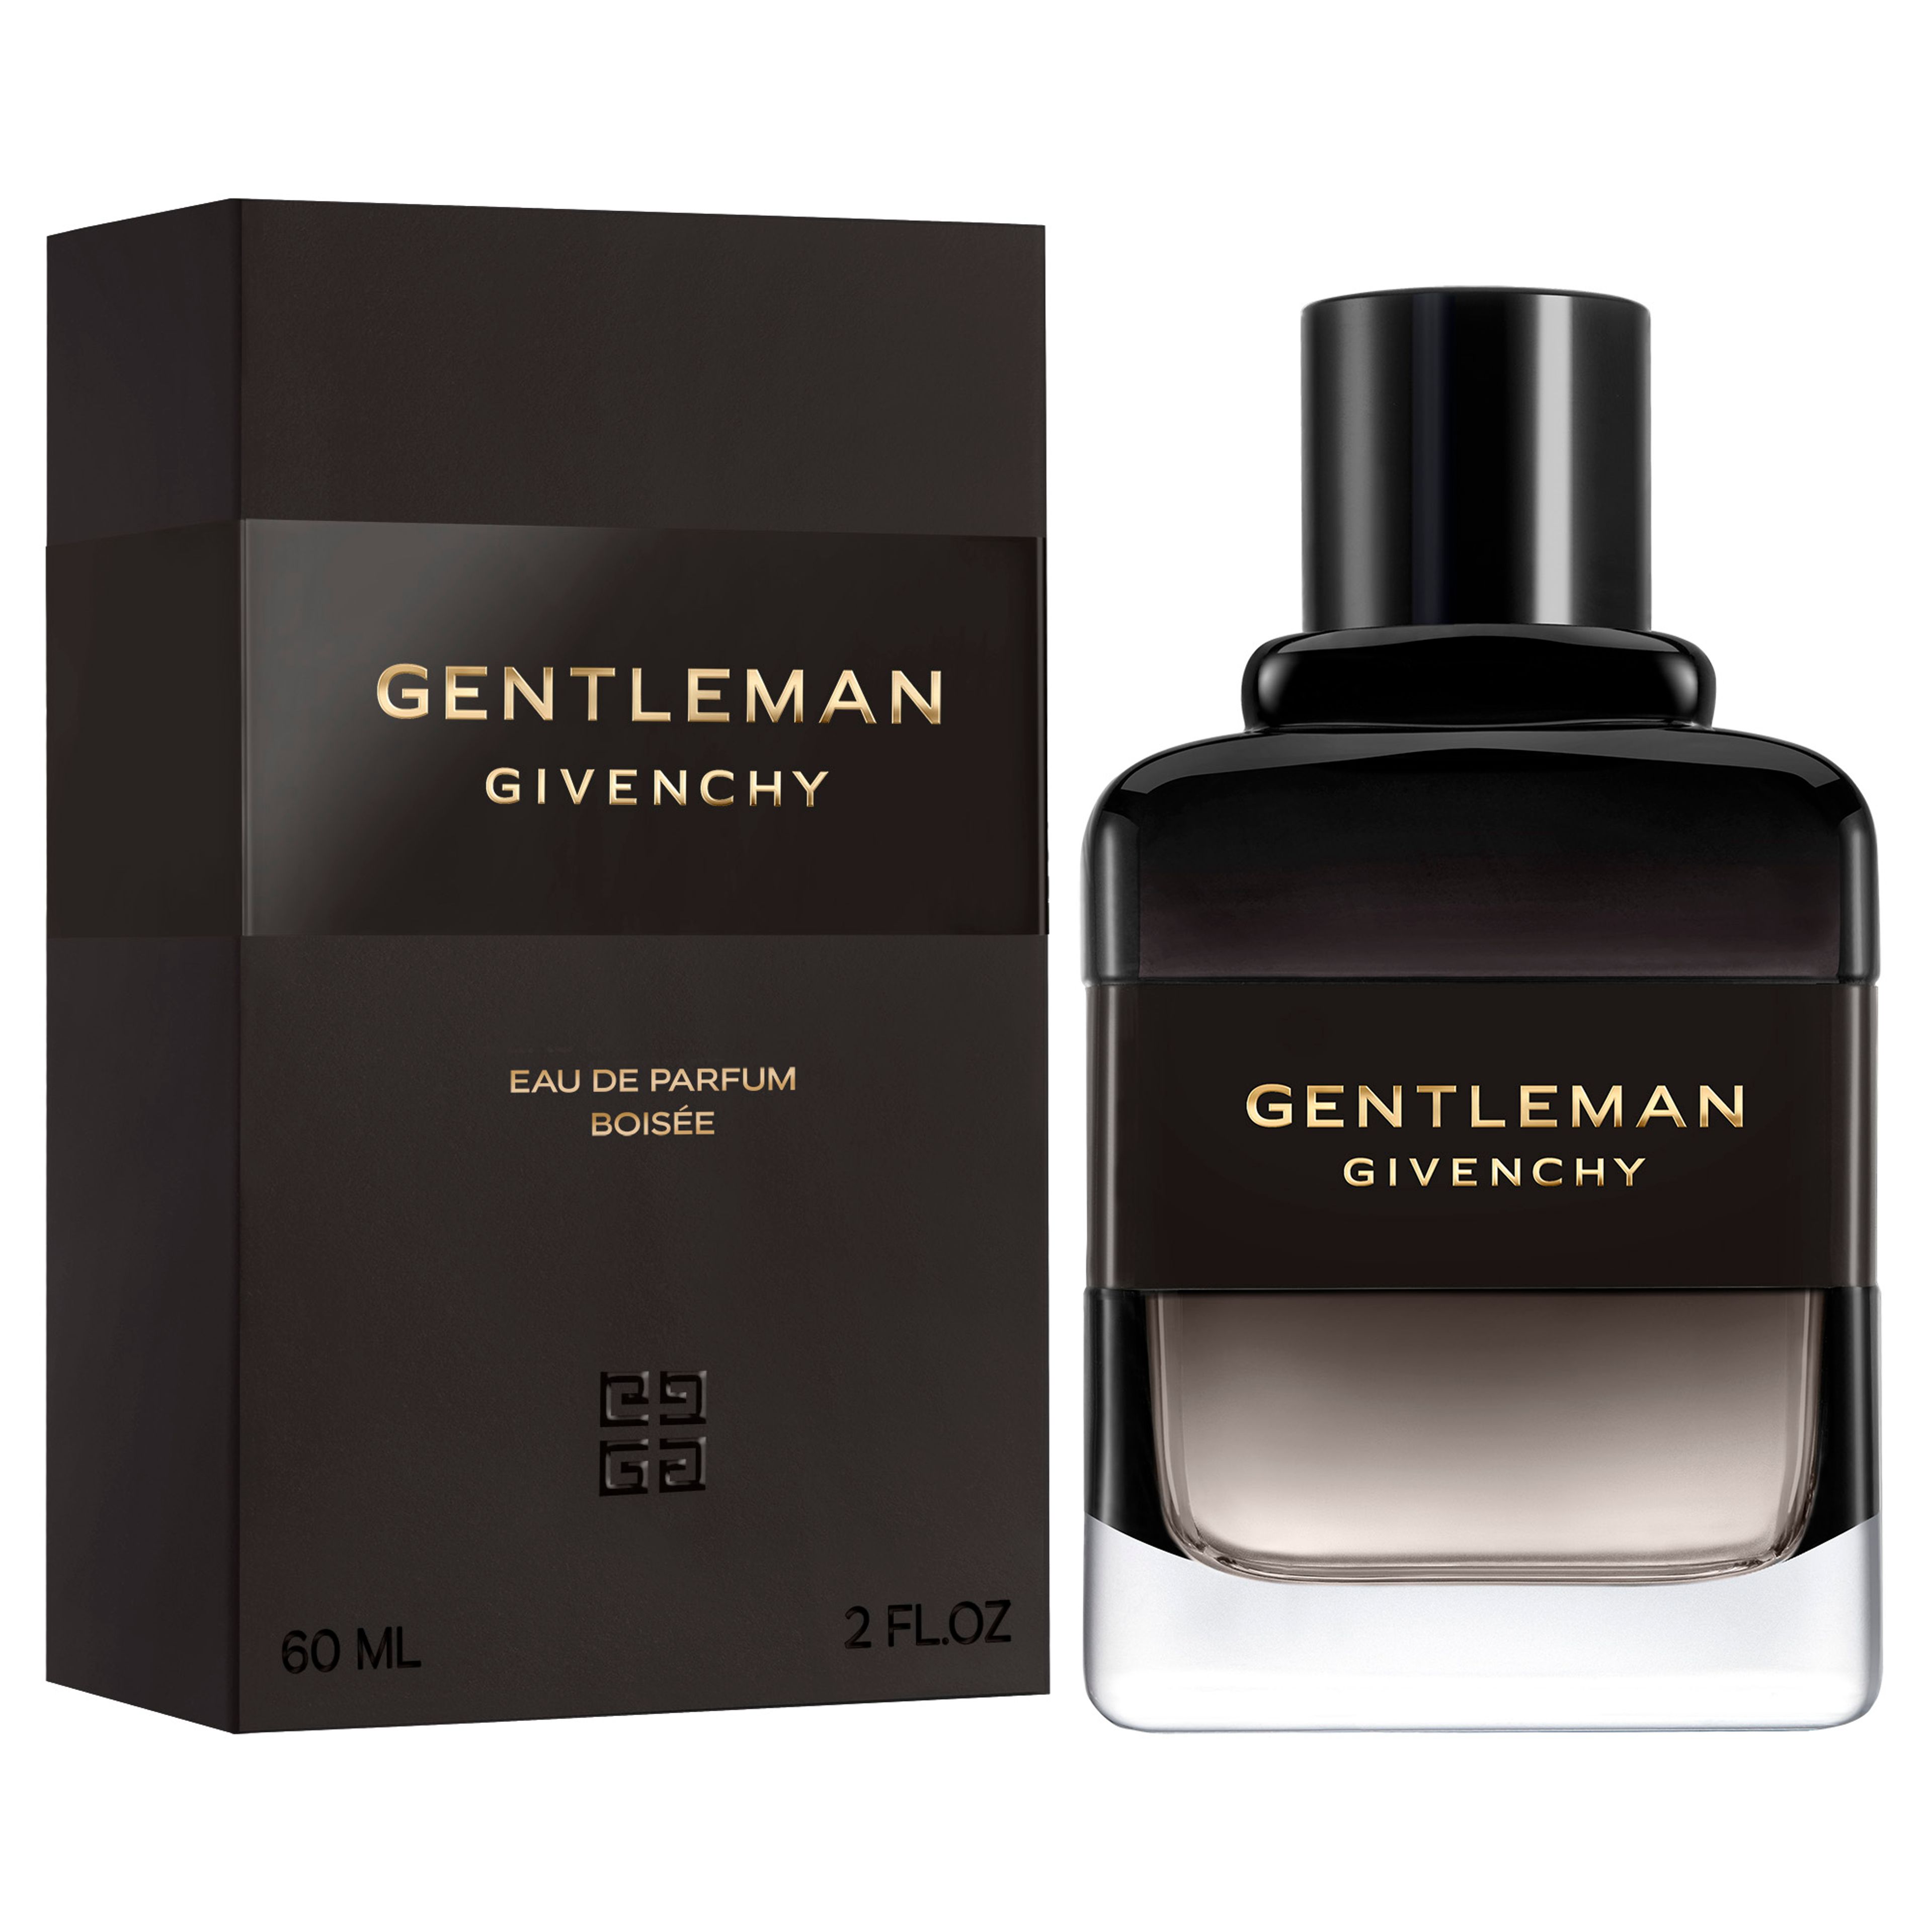 Givenchy Gentleman Eau De Parfum Boisee 2